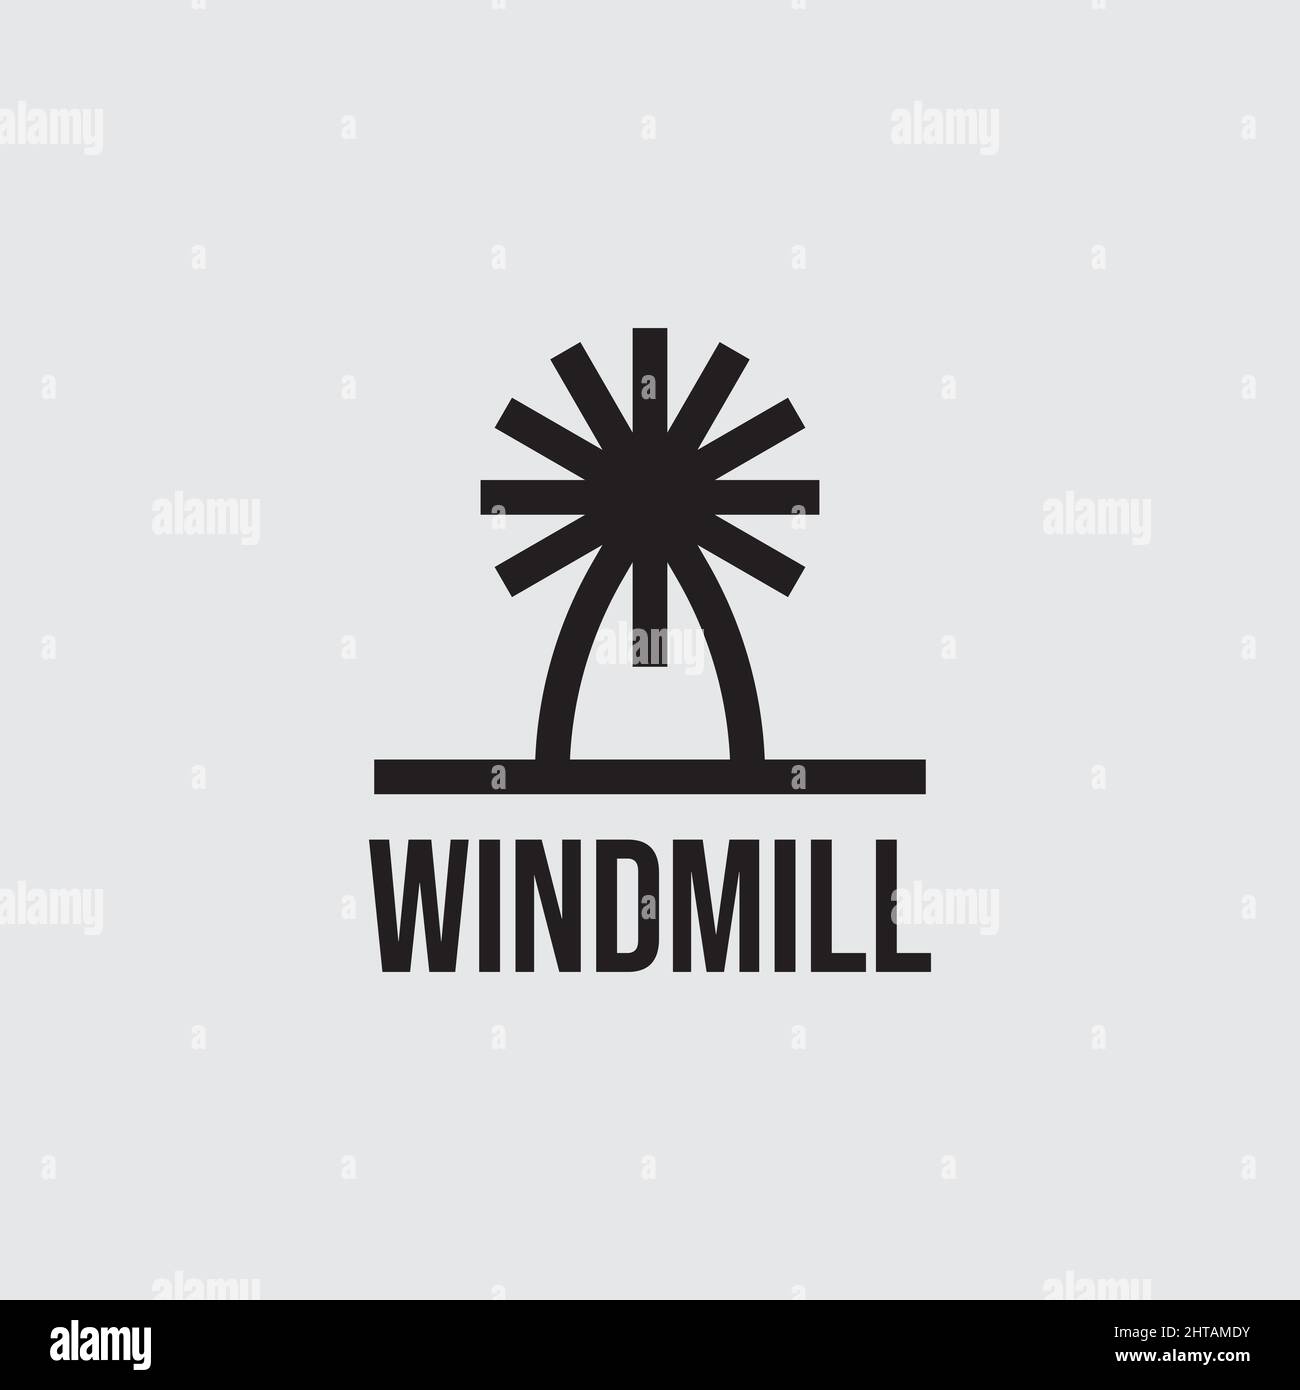 windmill logo design vector template Stock Vector